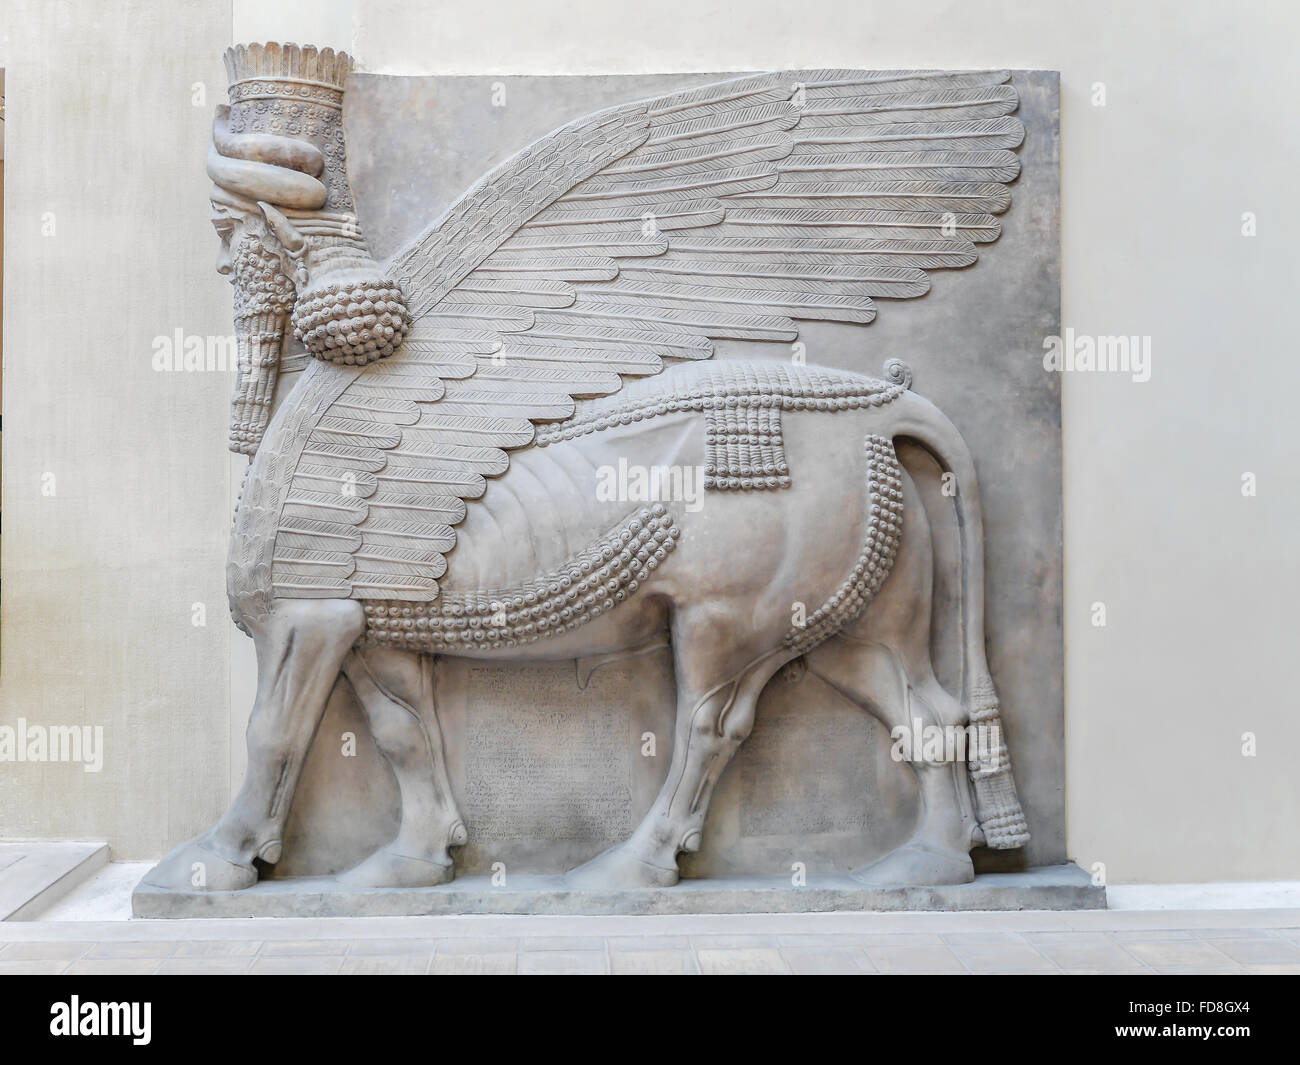 PARIS, FRANCE - 28 août 2013 : secours à cour Khorsabad cour - partie de l'histoire mésopotamienne antique exposé au Louvre Mu Banque D'Images